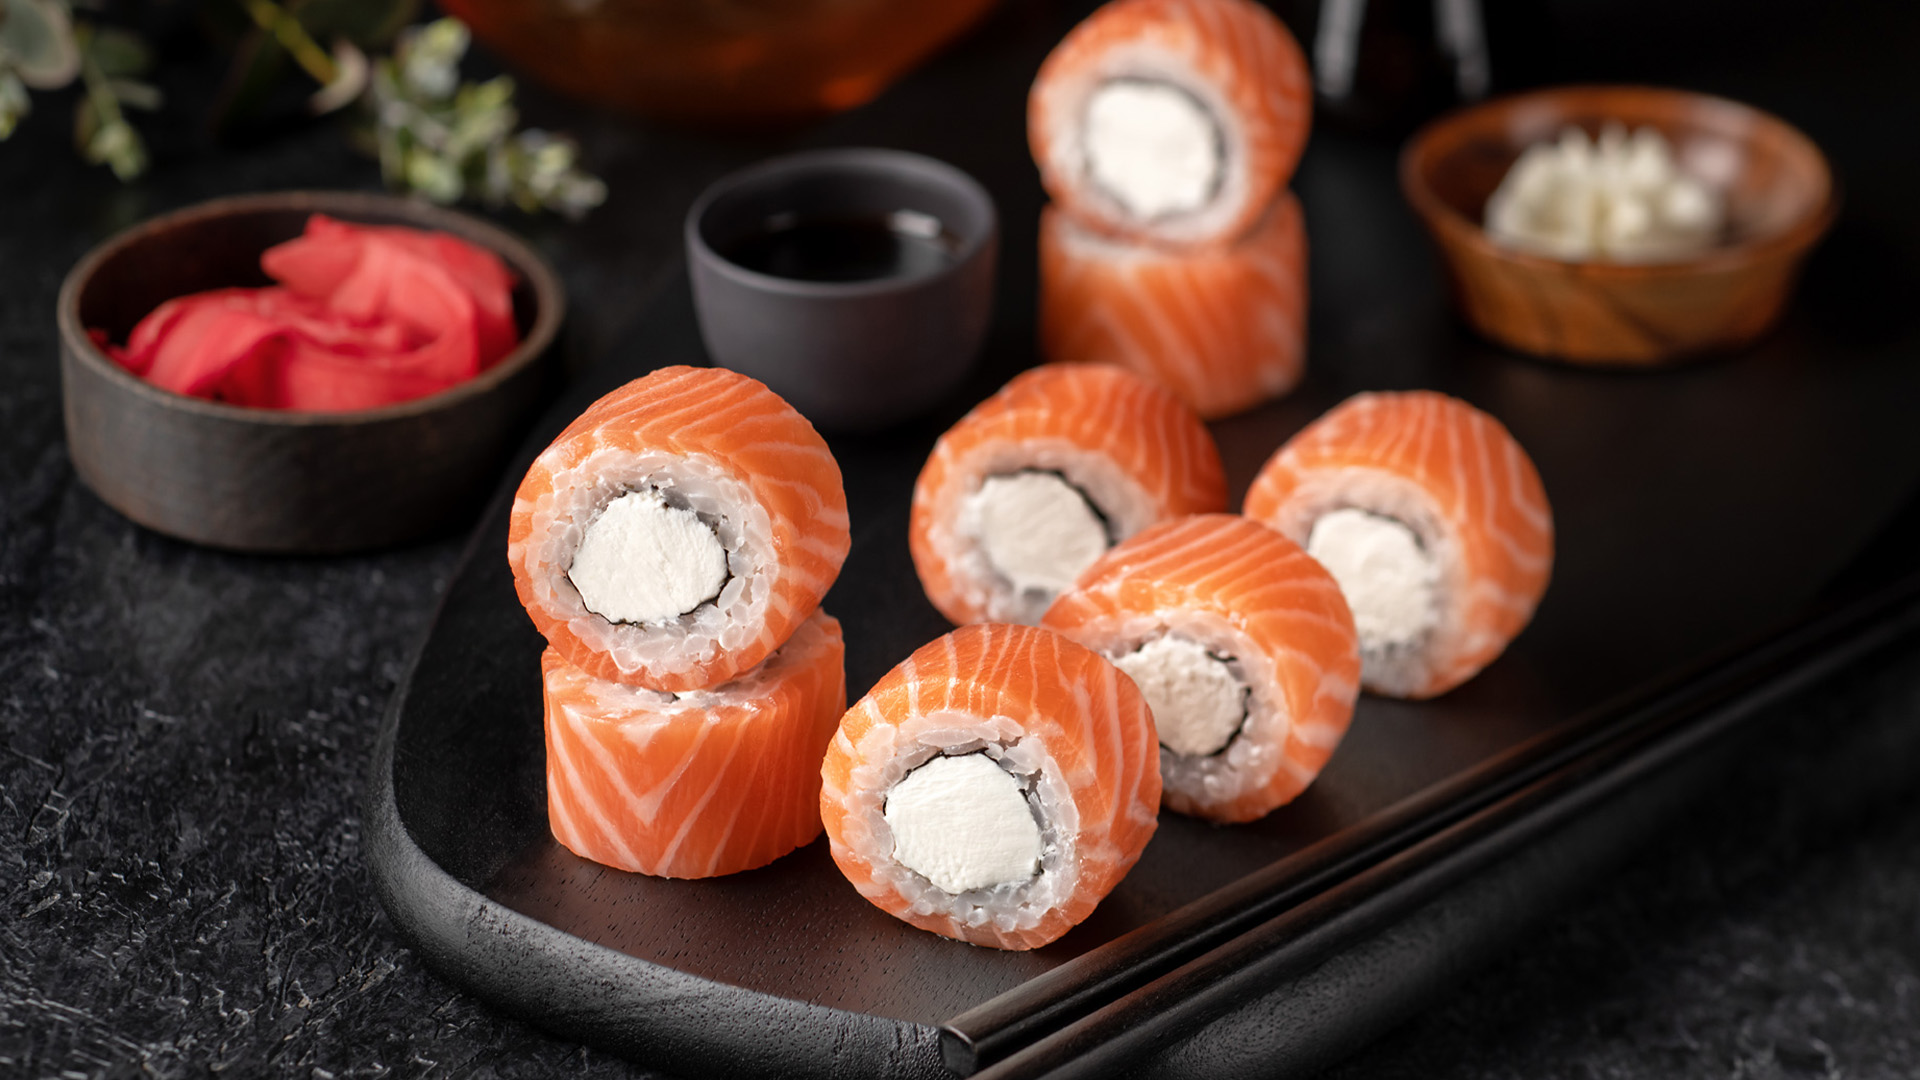 СушиСтор – это сеть из более, чем 70-и суши-баров, службы доставки суши, роллов, сетов, wok.